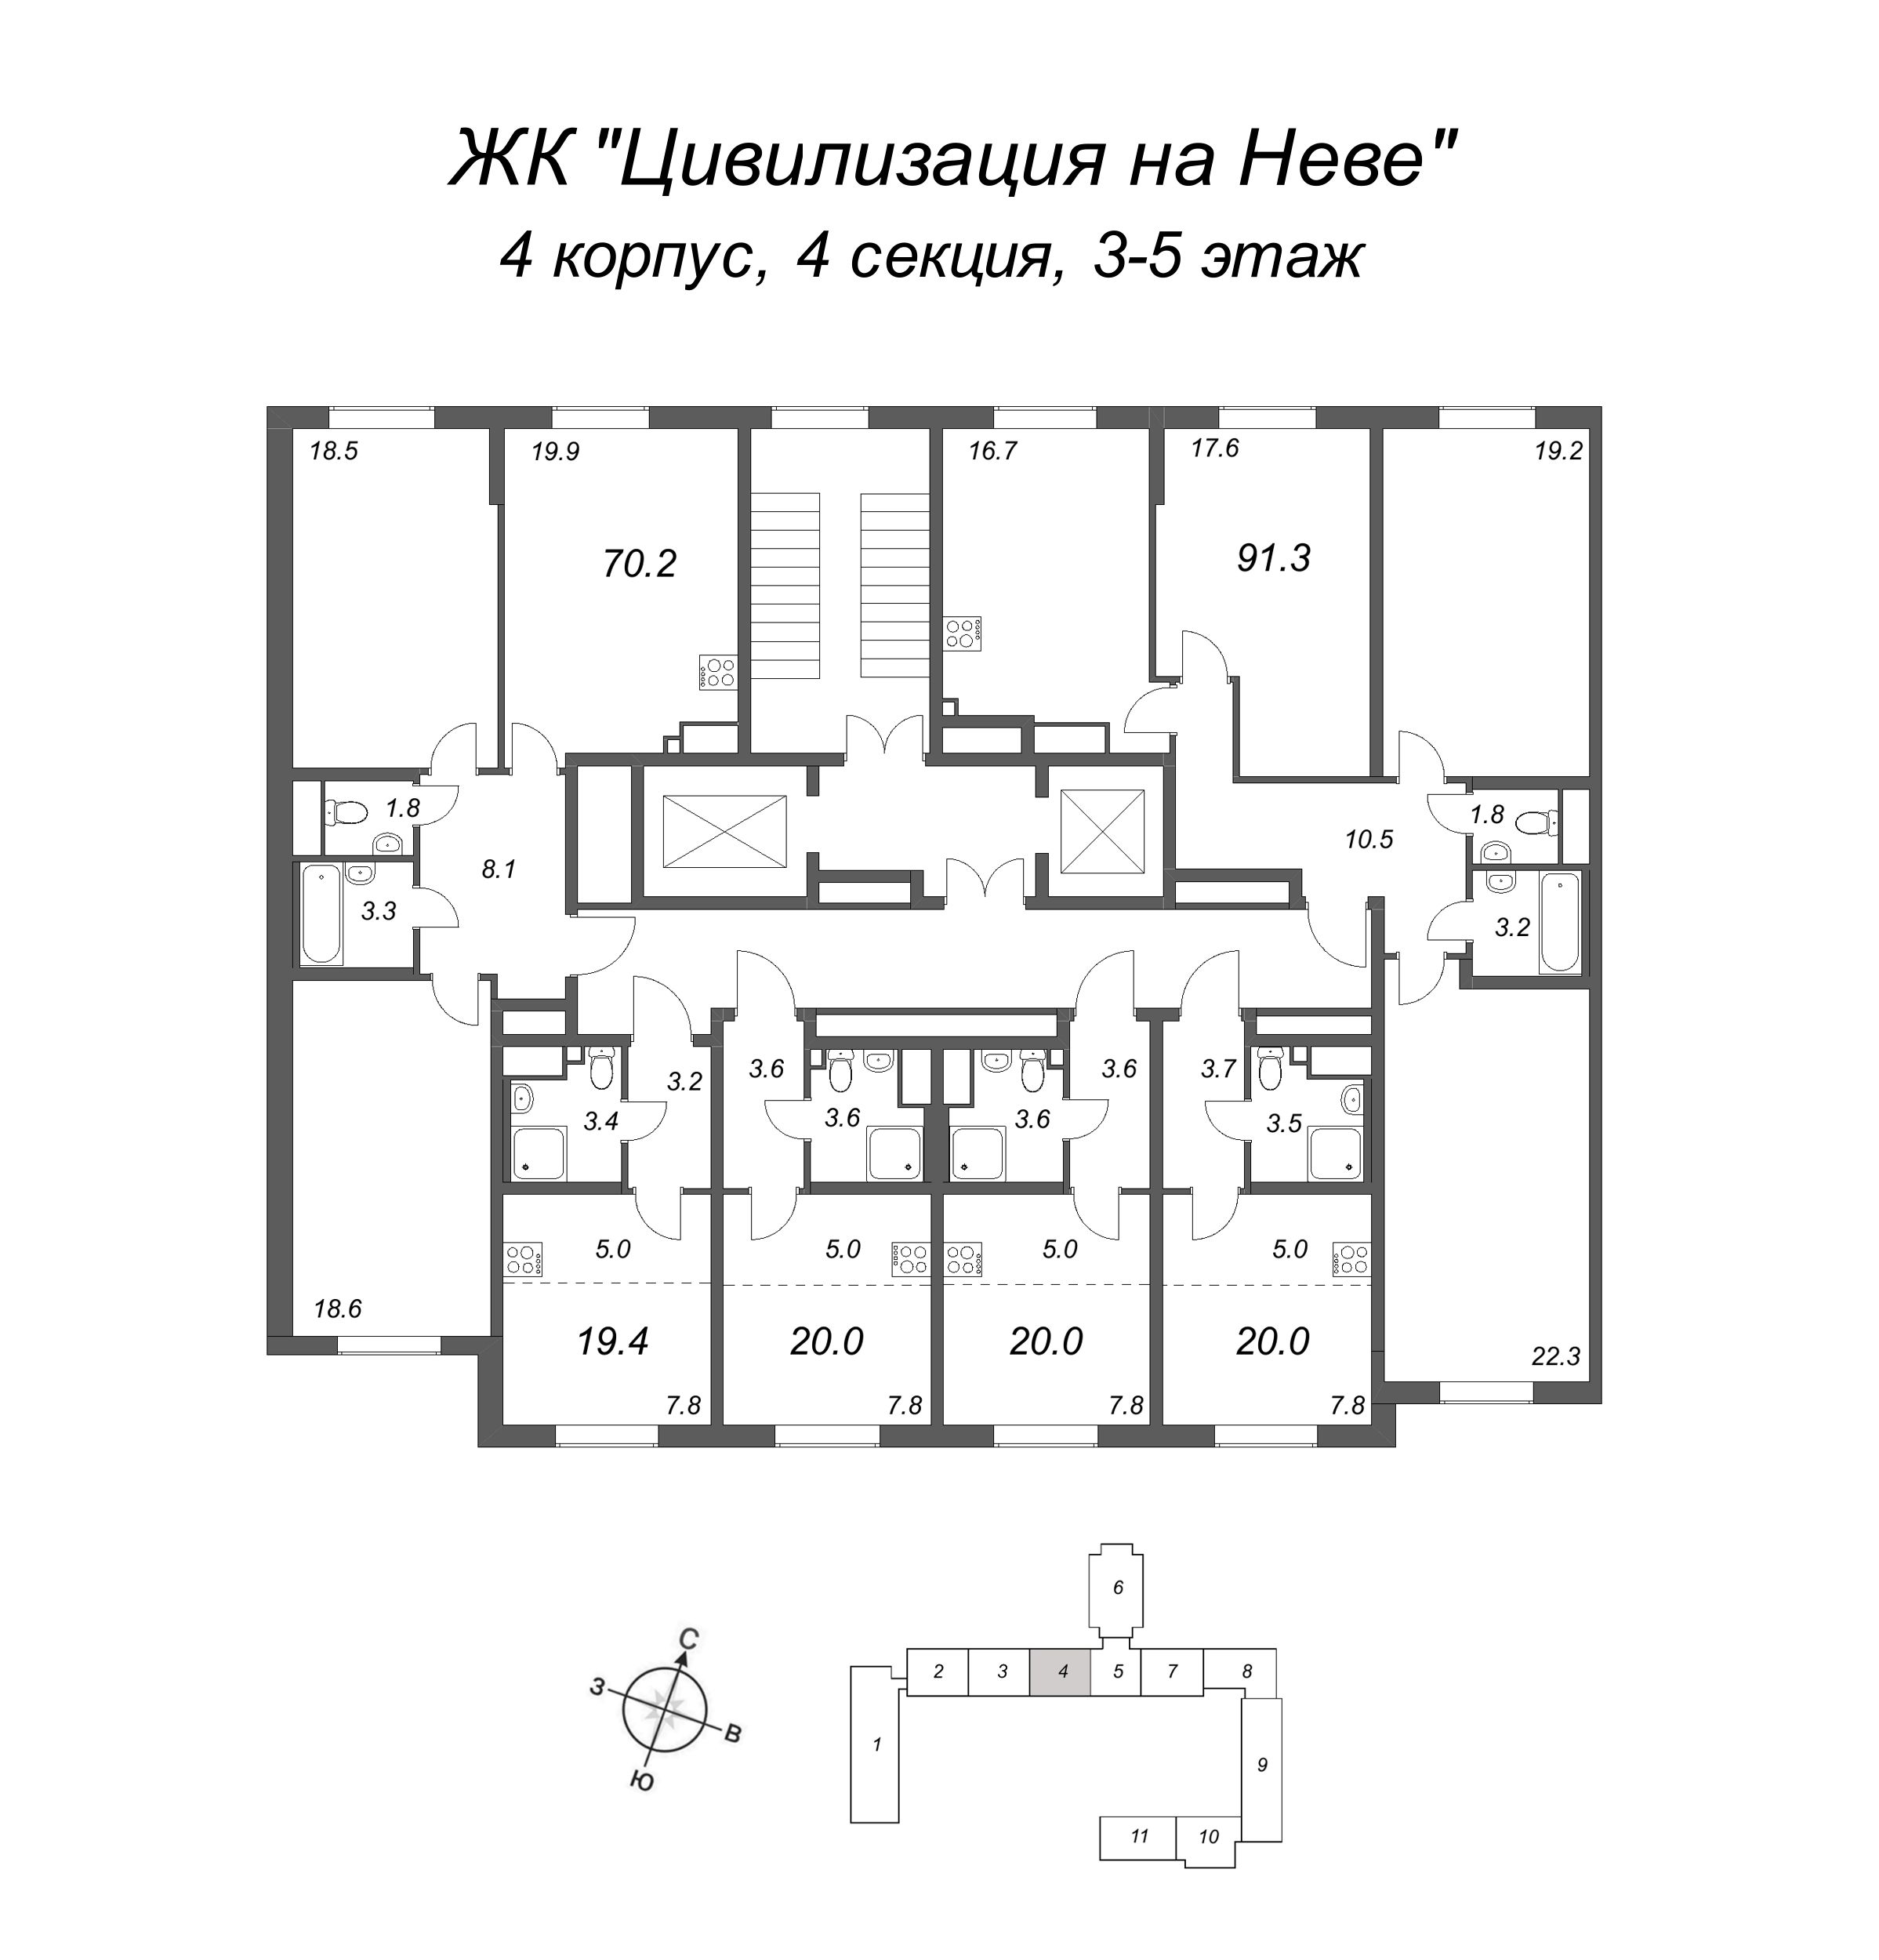 4-комнатная (Евро) квартира, 91.3 м² в ЖК "Цивилизация на Неве" - планировка этажа